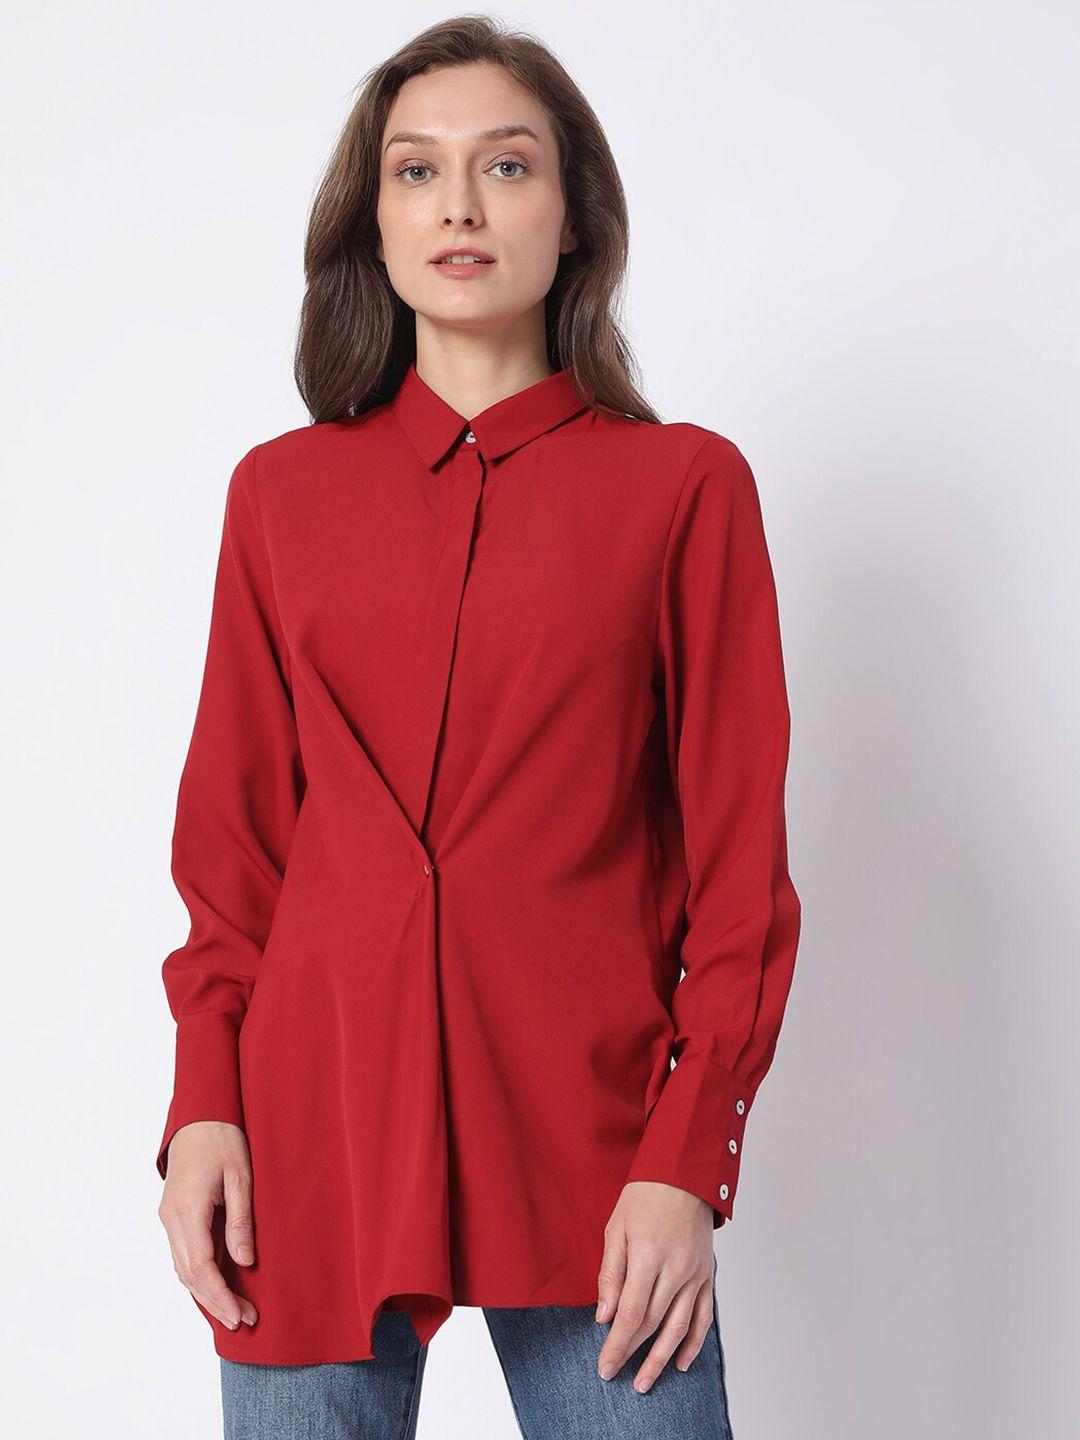 vero moda women red casual shirt